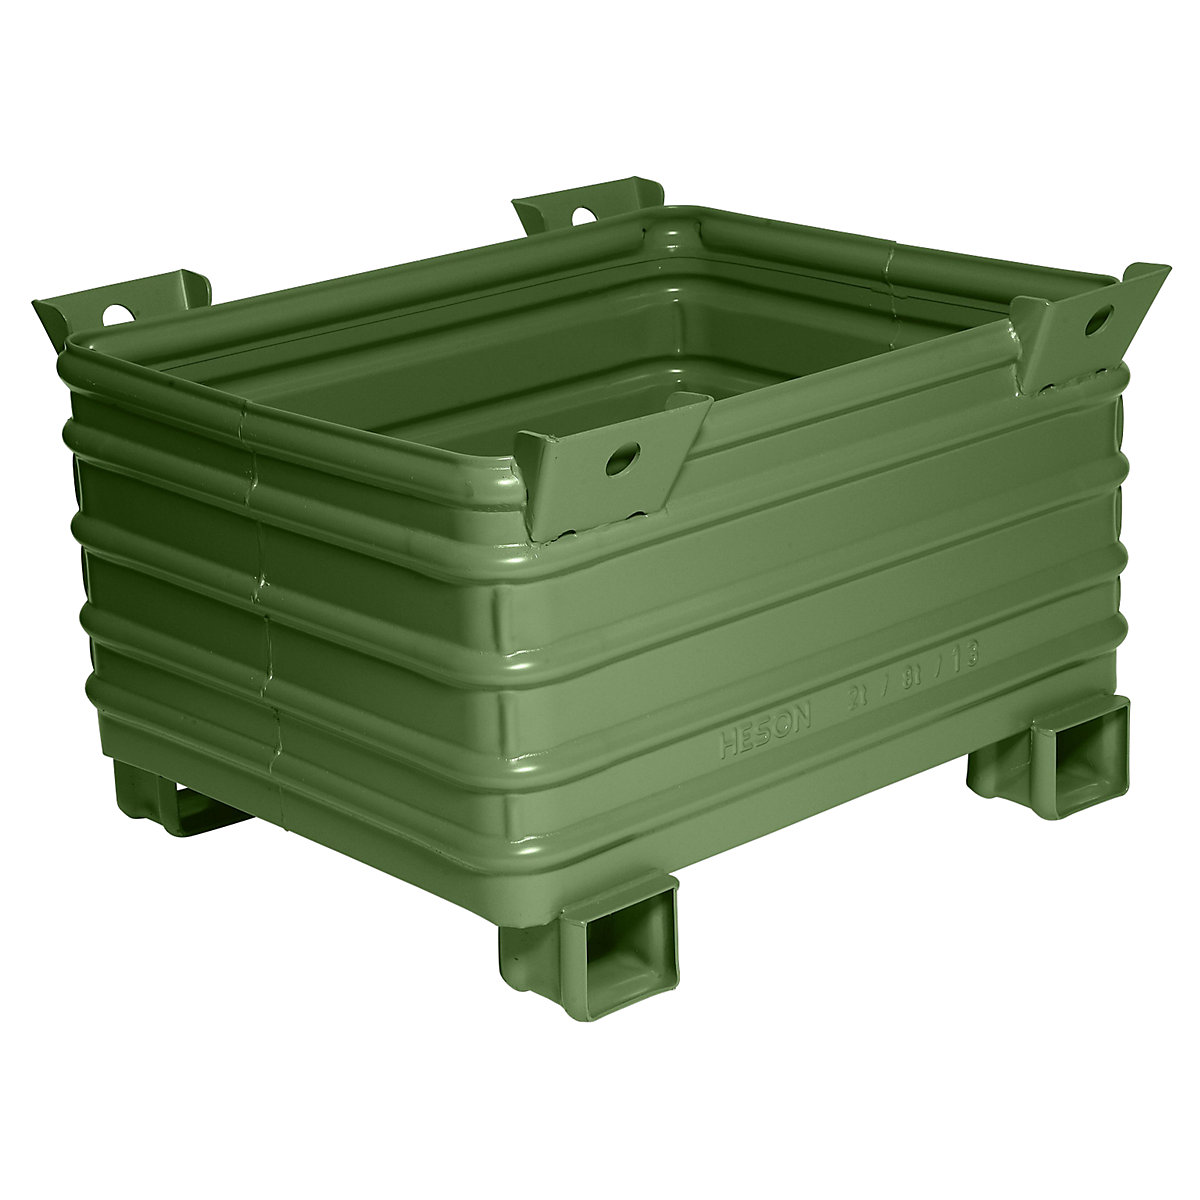 Heson Schwerlast-Stapelbehälter, BxL 800 x 1000 mm, mit U-förmigen Füßen, grün lackiert, ab 1 Stk